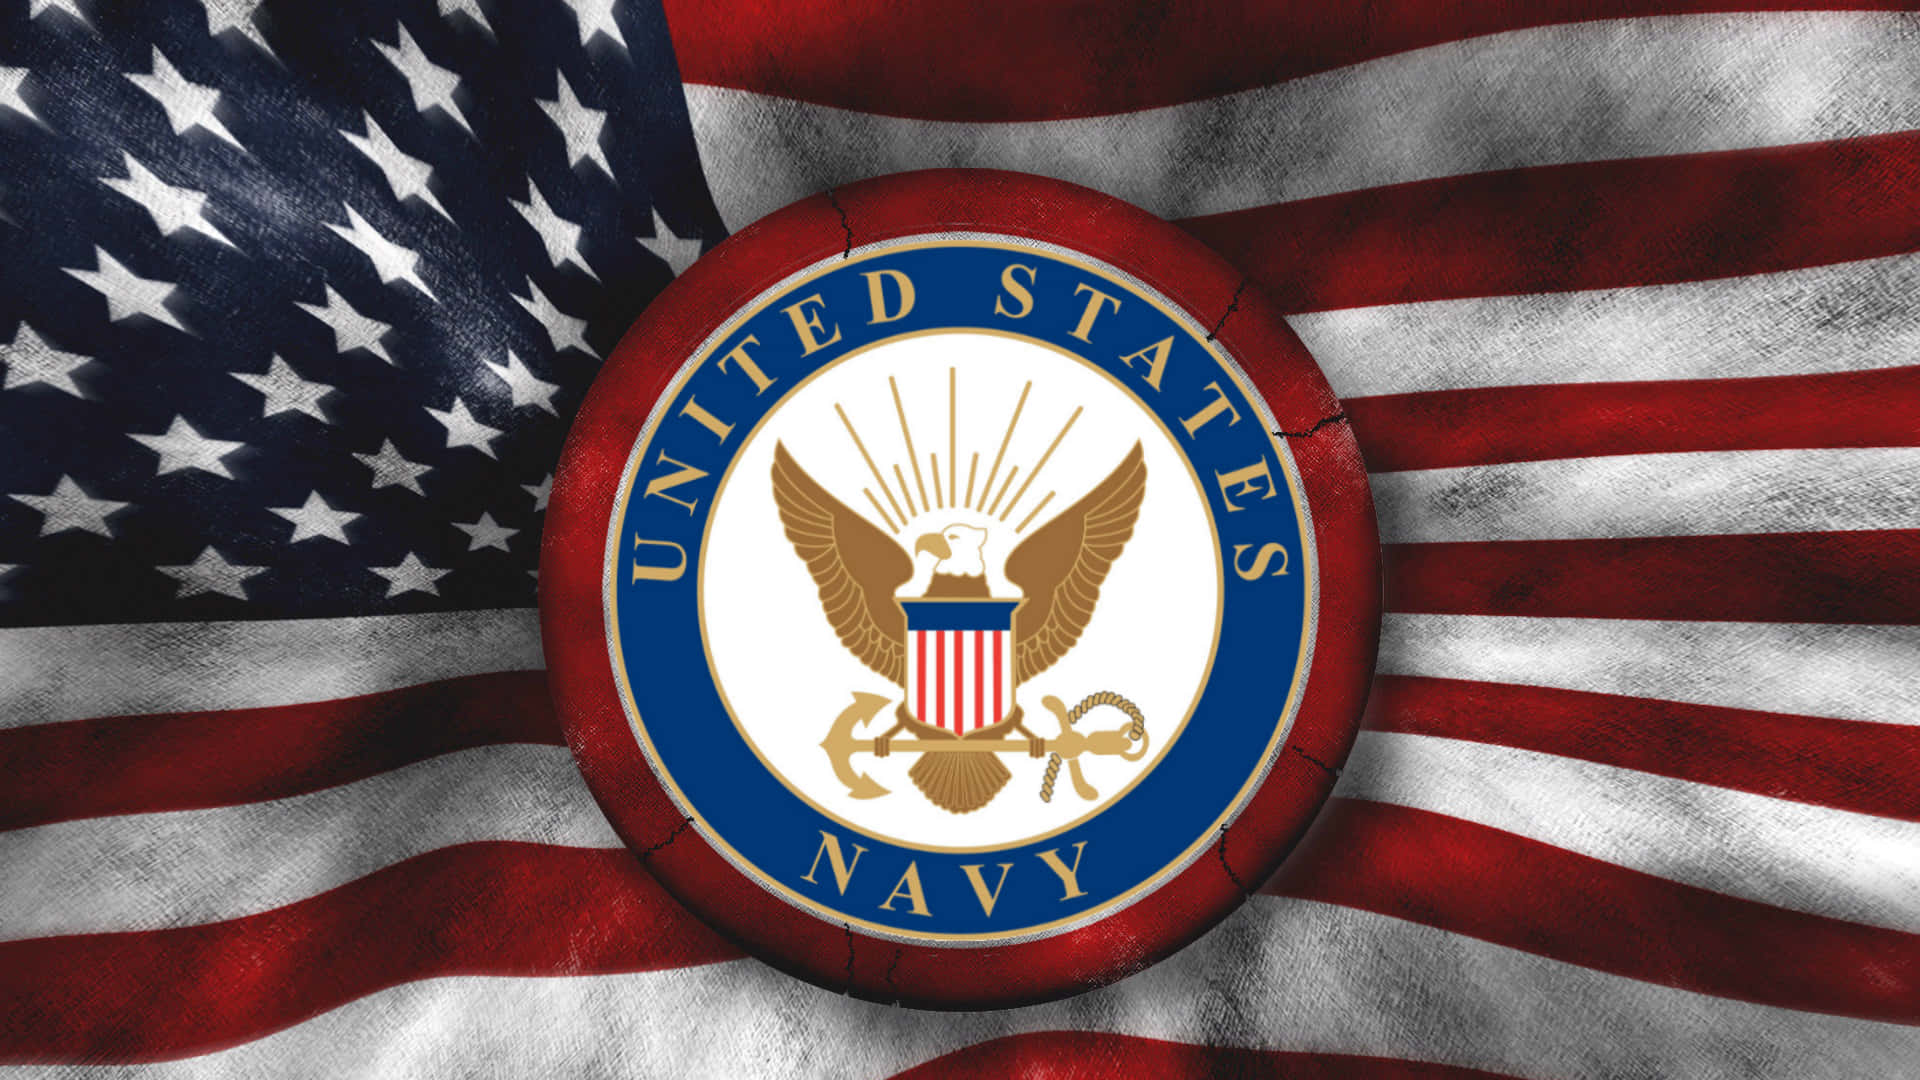 Combattendoper La Nostra Libertà - Us Navy